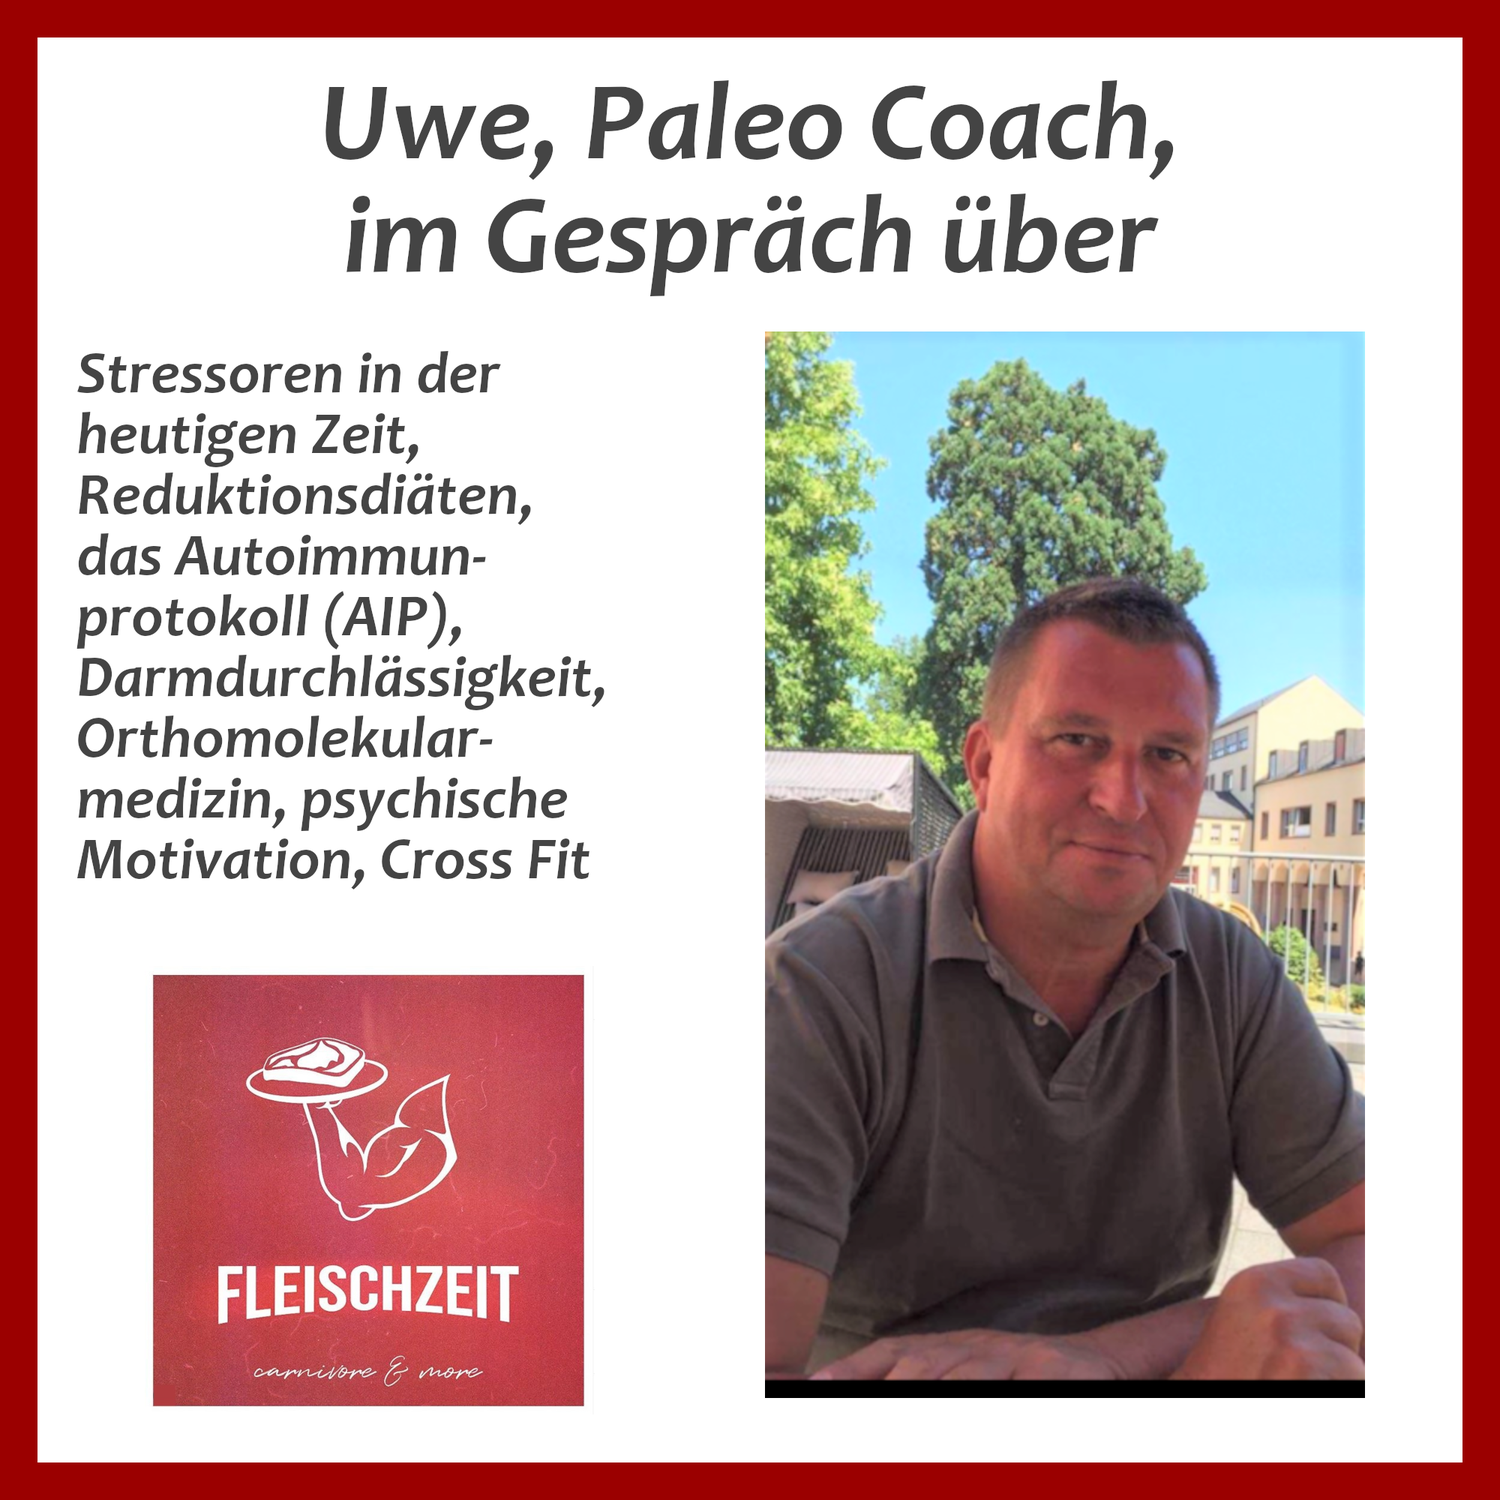 Uwe, Paleo Coach